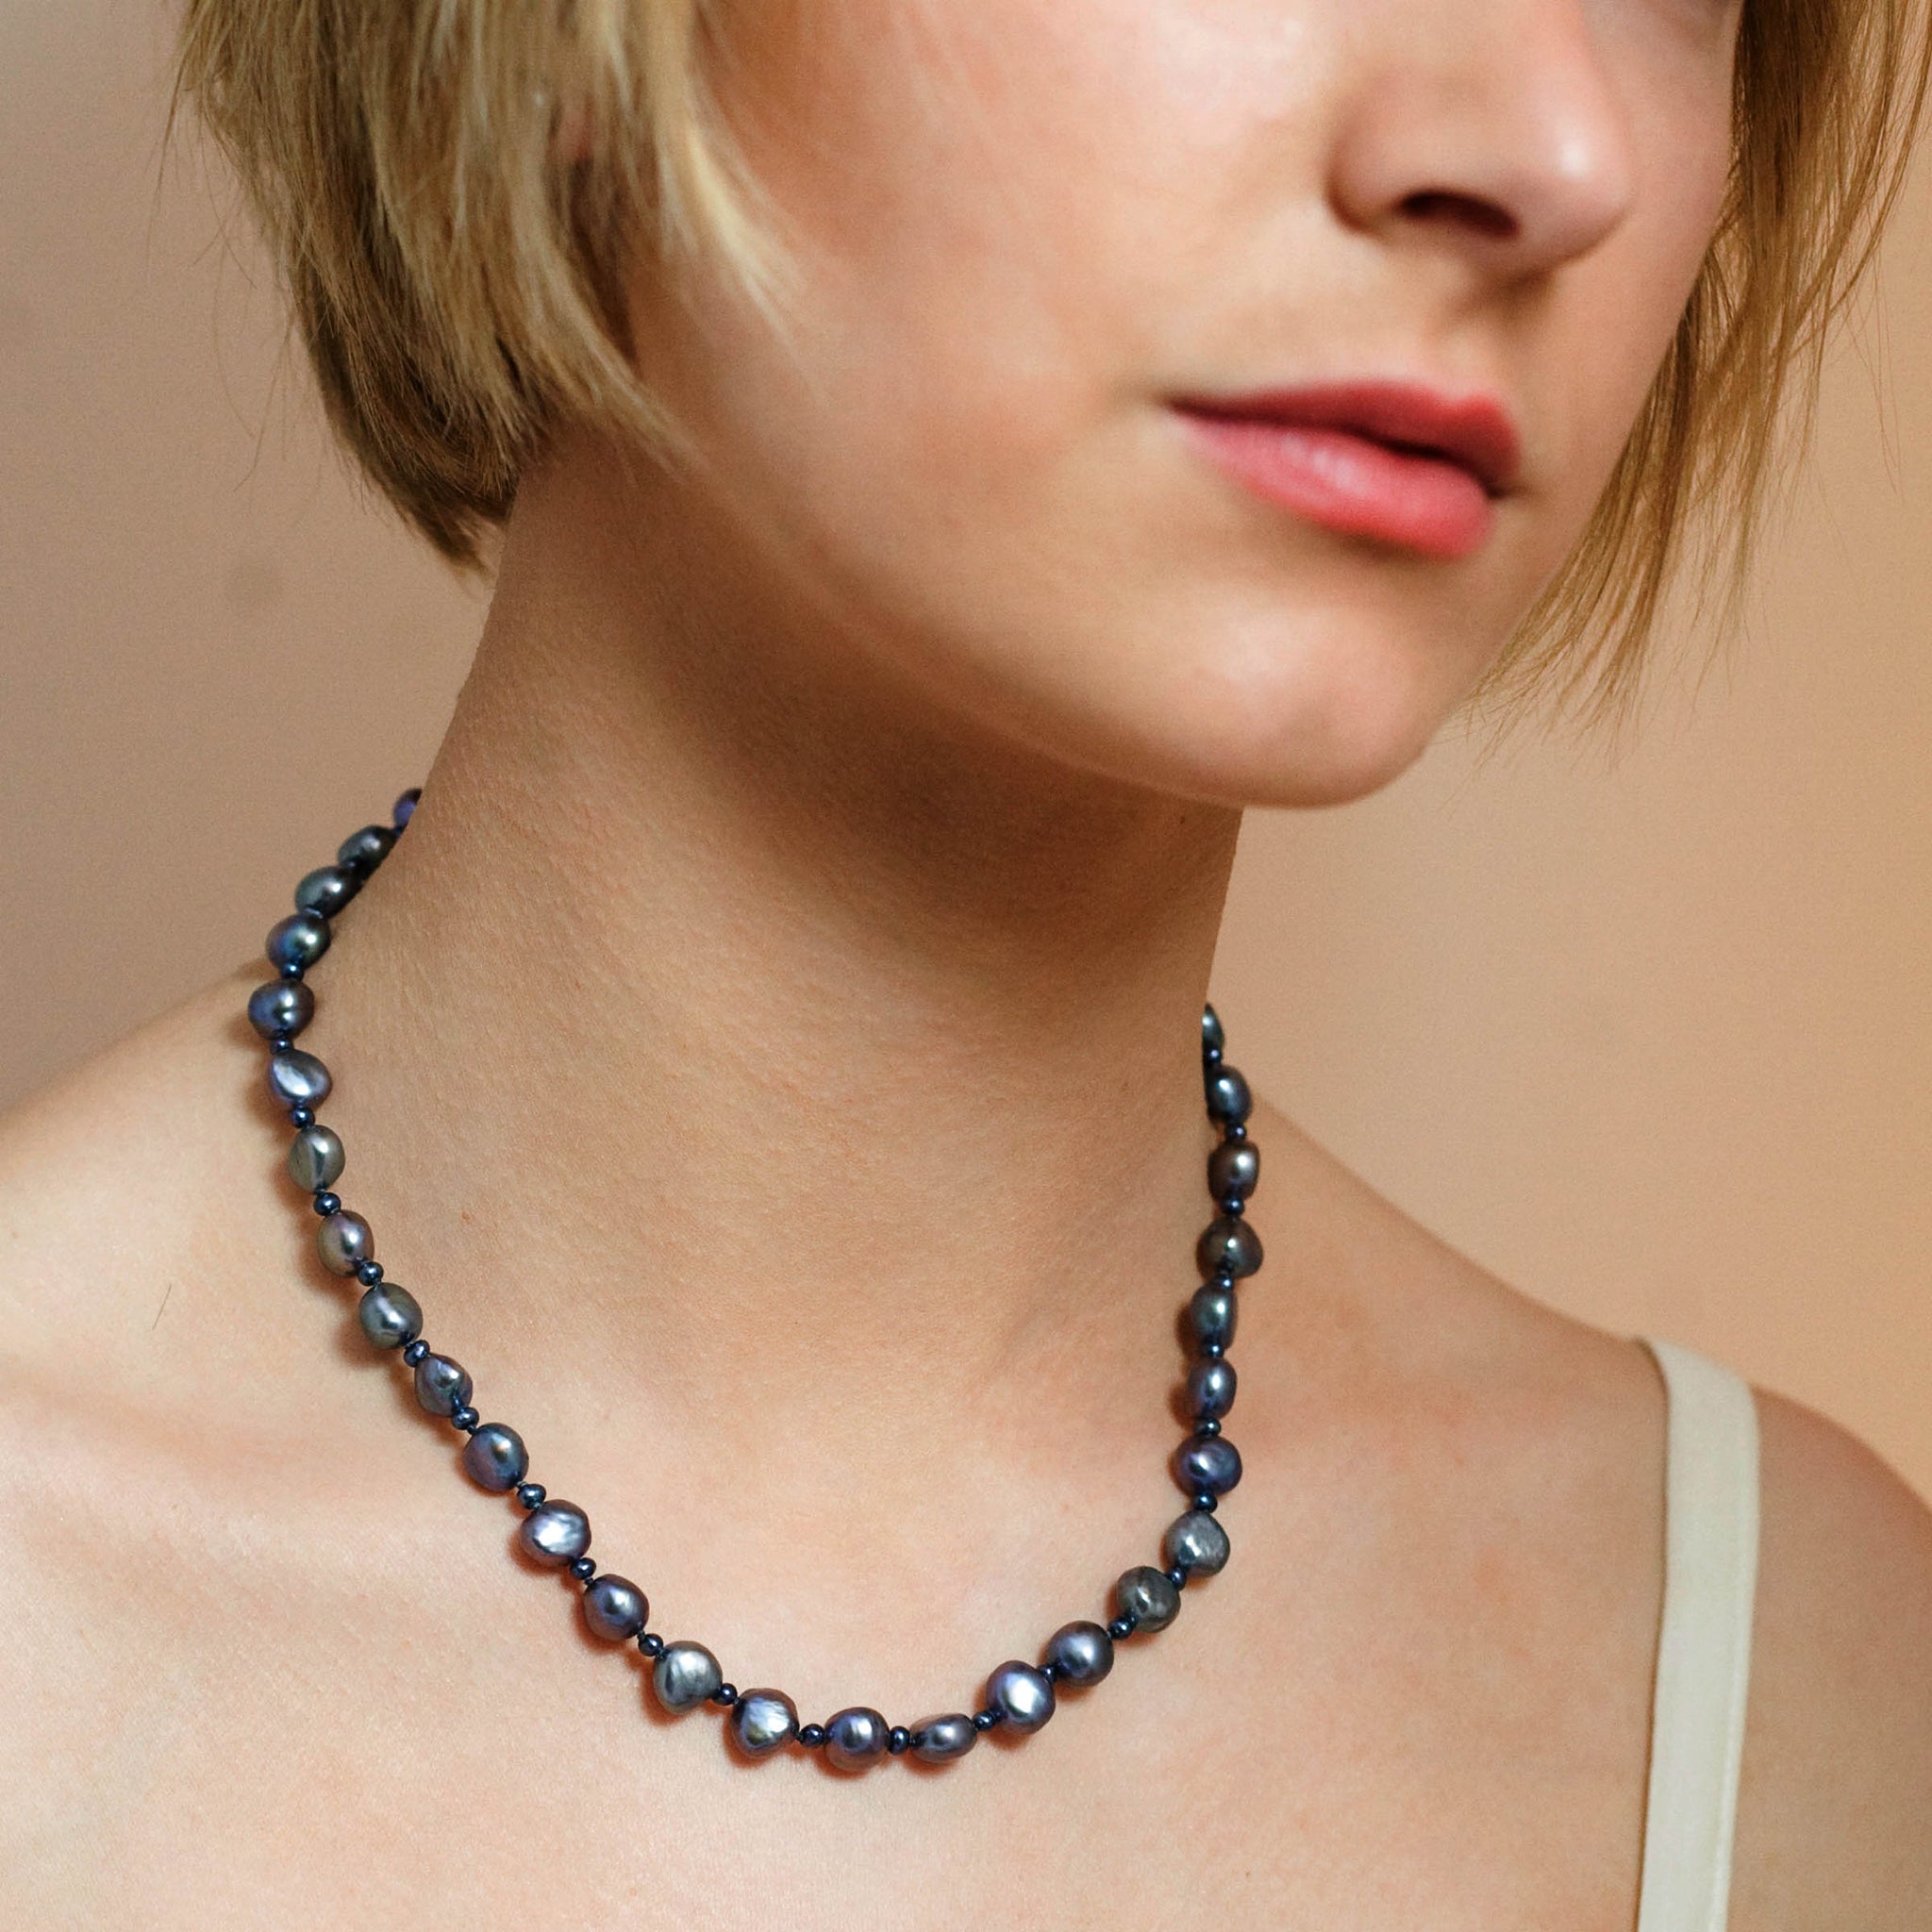 Buy Black Pearls Jewelry | Darpan Mangatrai Online | Mangatrai Pearls &  Jewellers